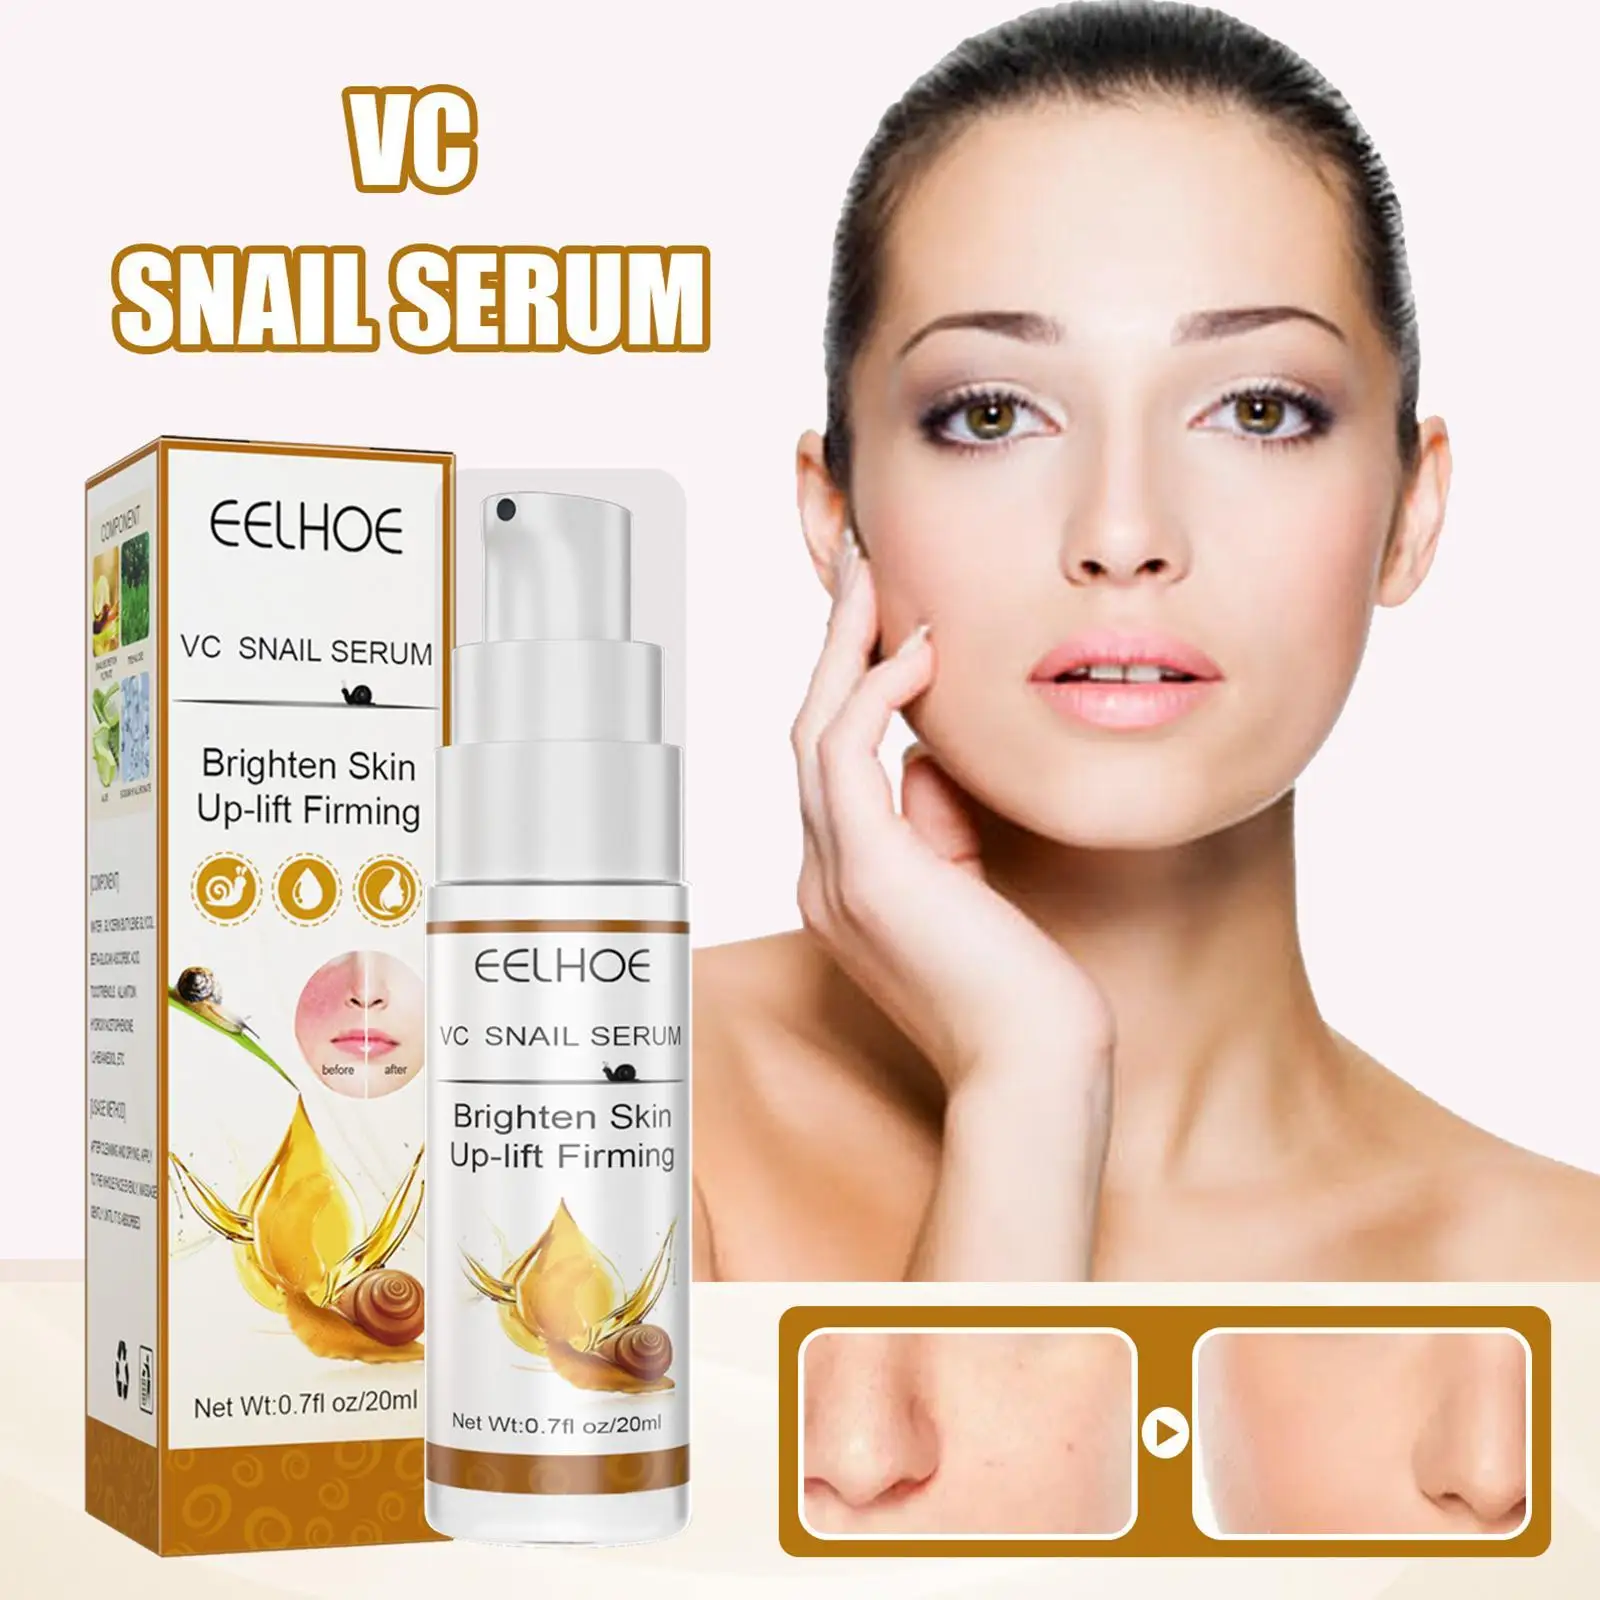 

20ml EELHOE VC Snail Serum Facial Repair Redness Pores Whiten Shrink Skin Brighten Cream Lighten Face Care Anti Aging Wrinkle